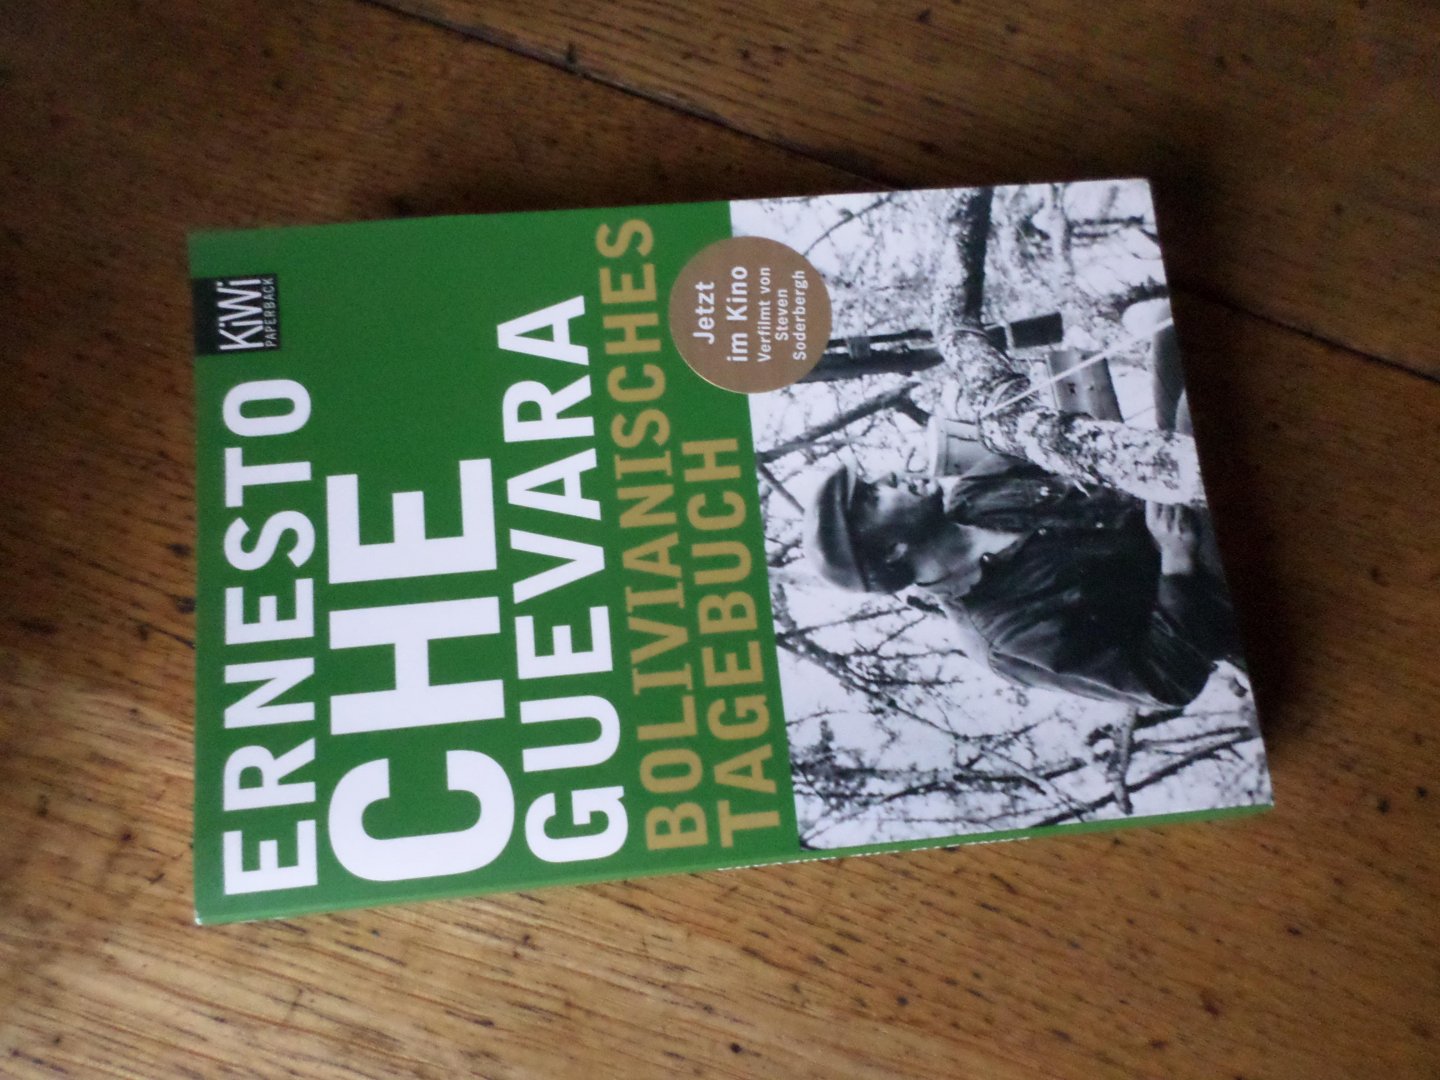 Guevara, Ernesto Che - Bolivianisches Tagebuch